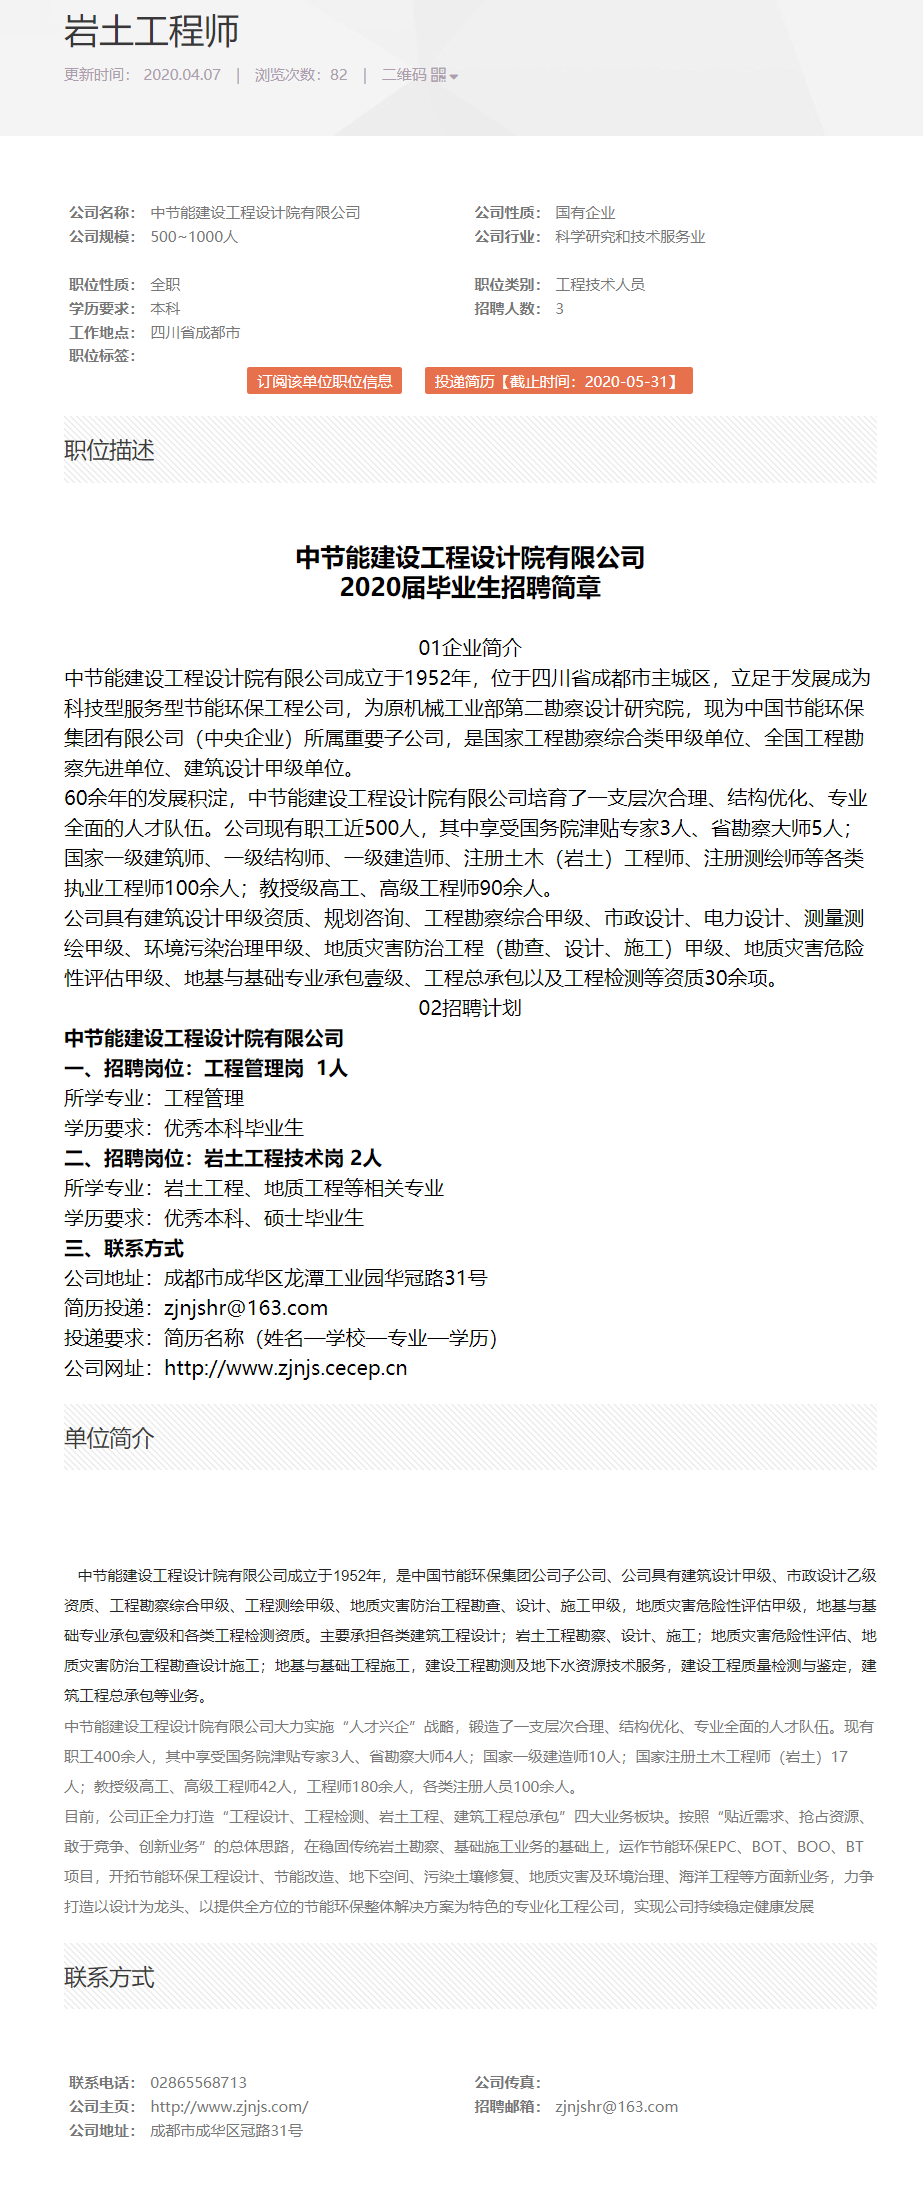 关于岩土工程师招聘上海的信息  第2张